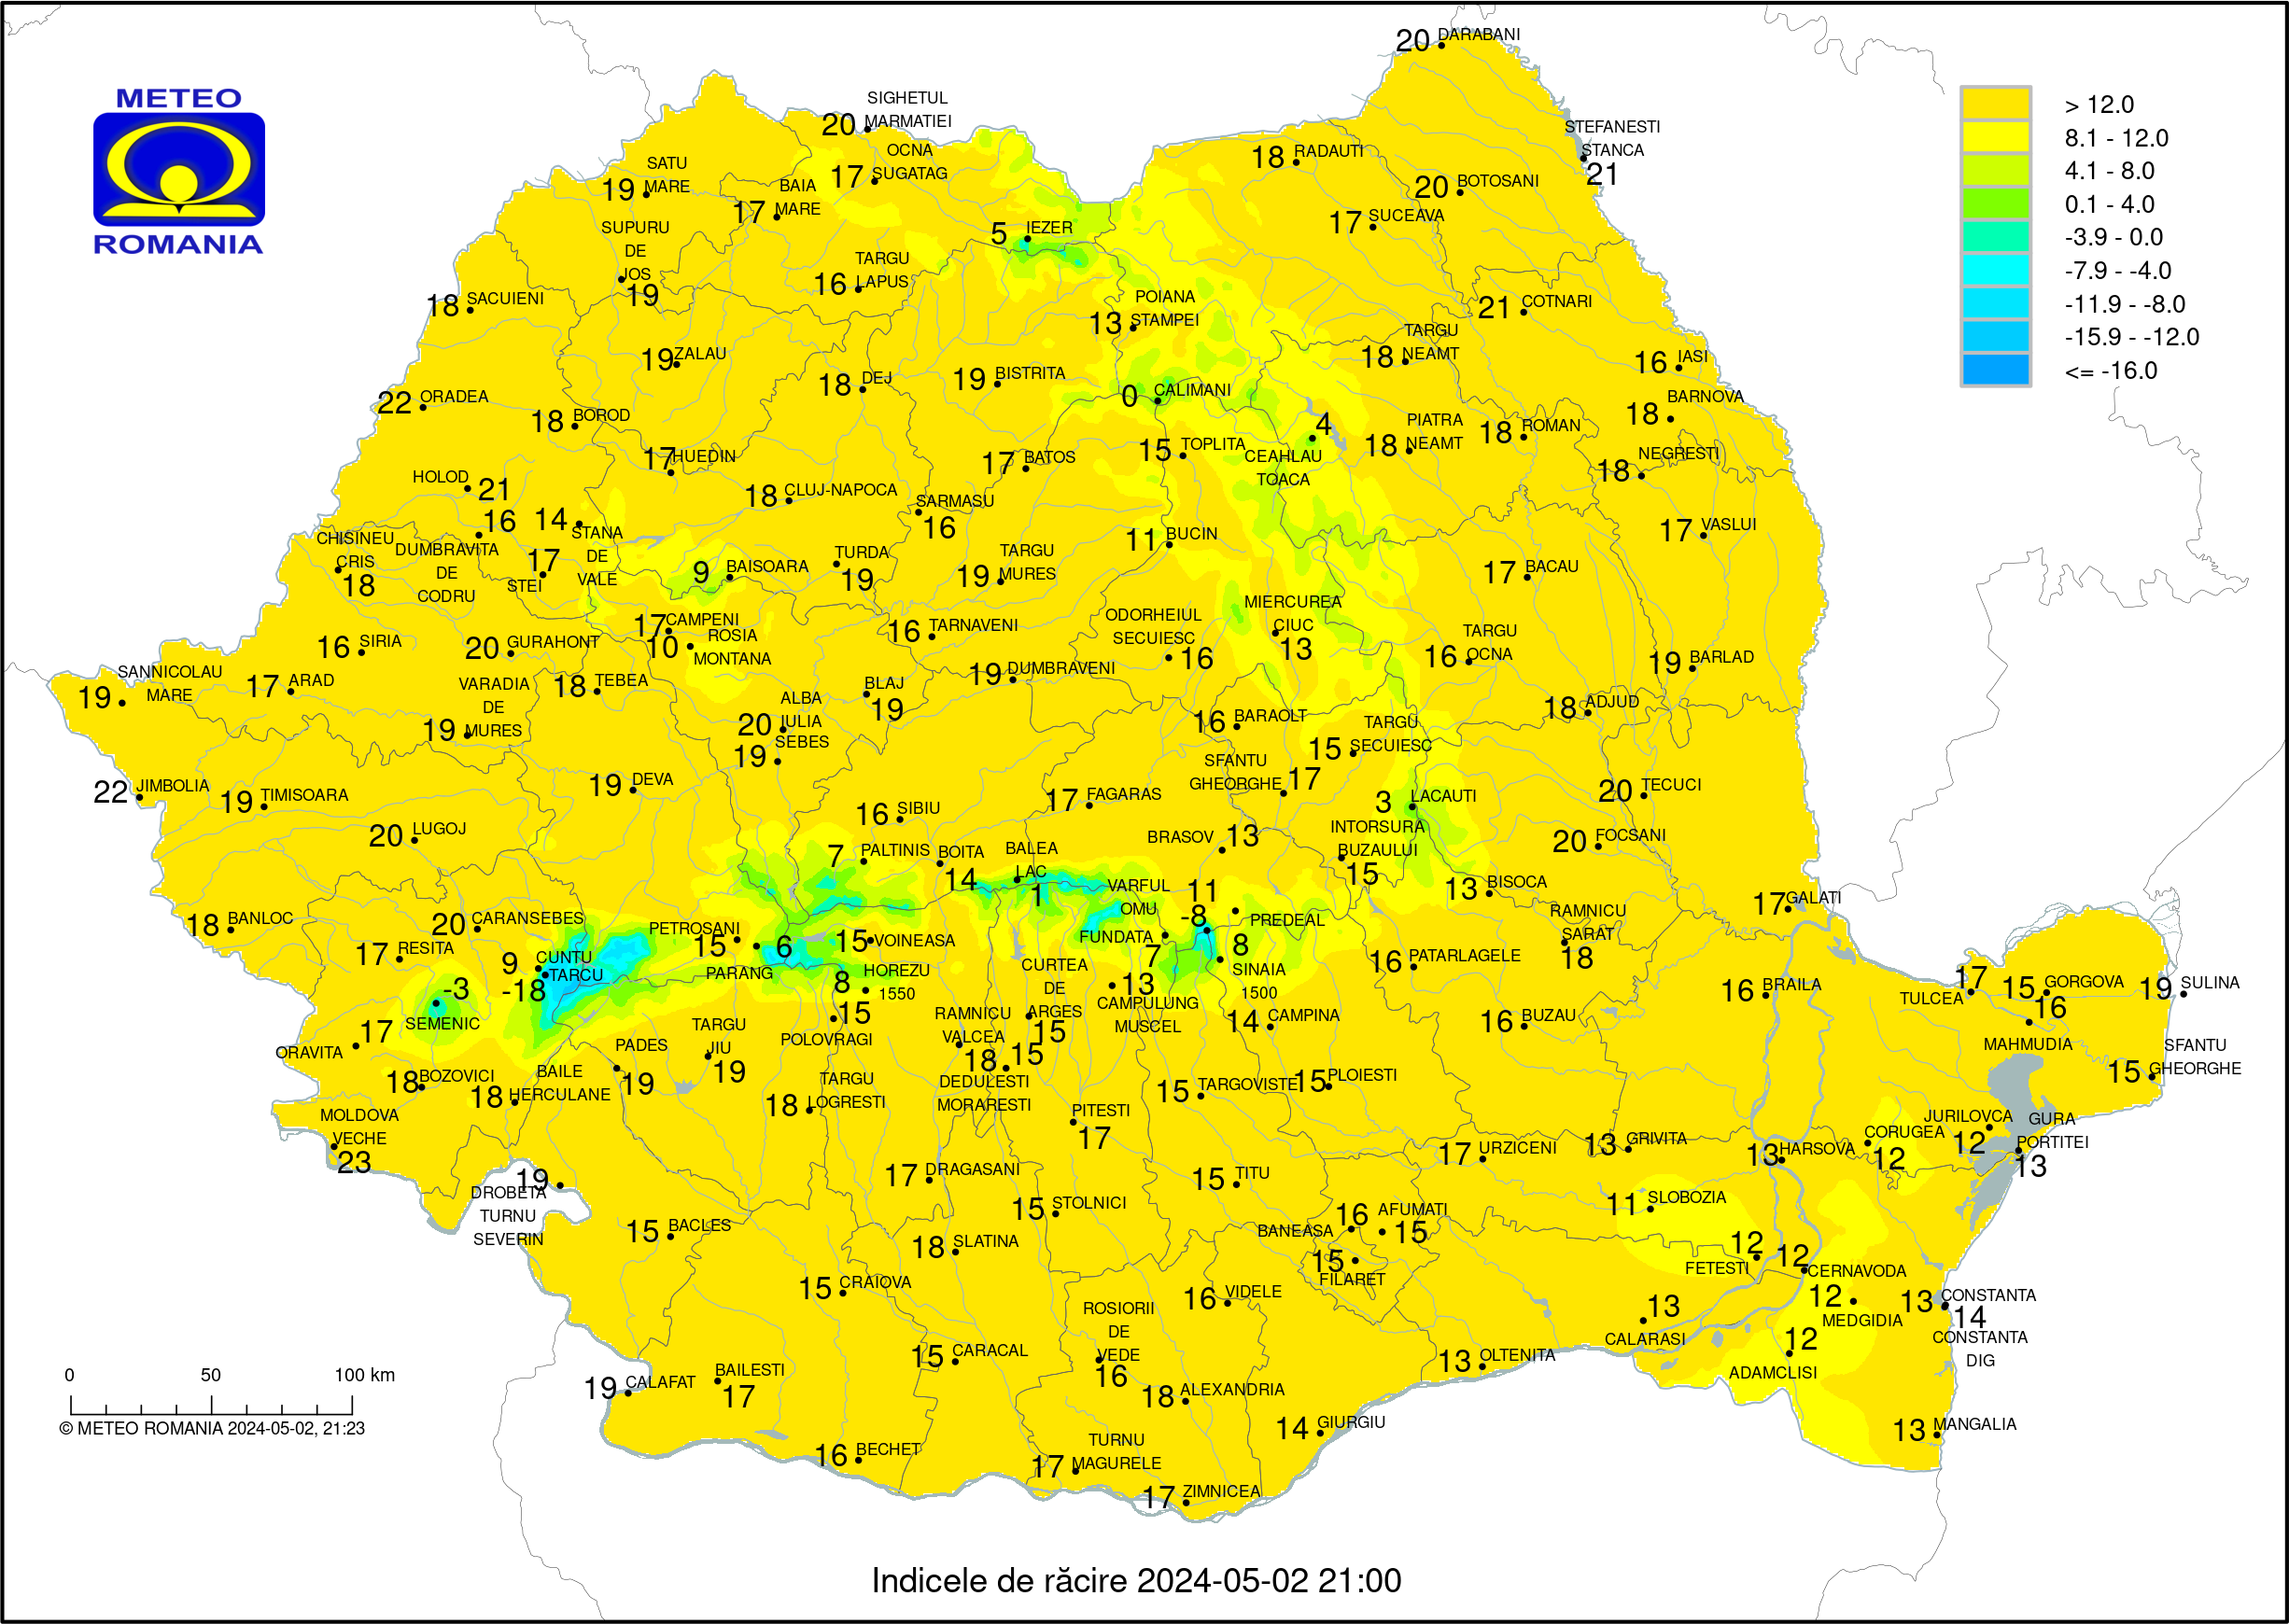 Temperaturi ora 20 #Romania (Romania evening temperatures)